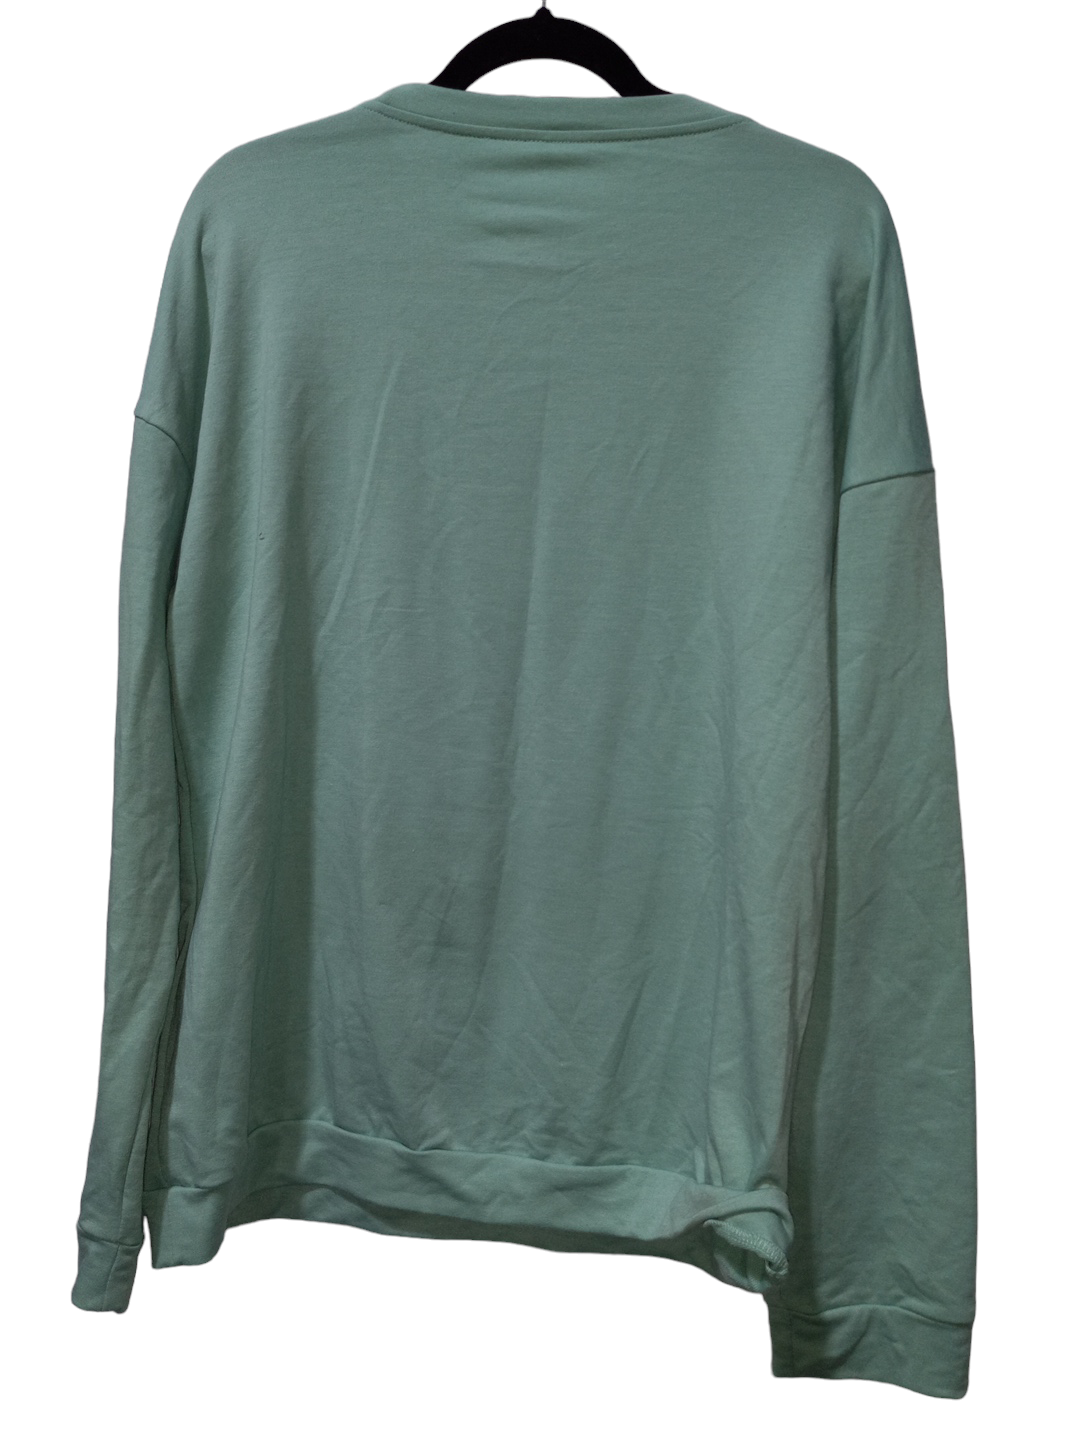 Green Sweater Shein, Size Xxl